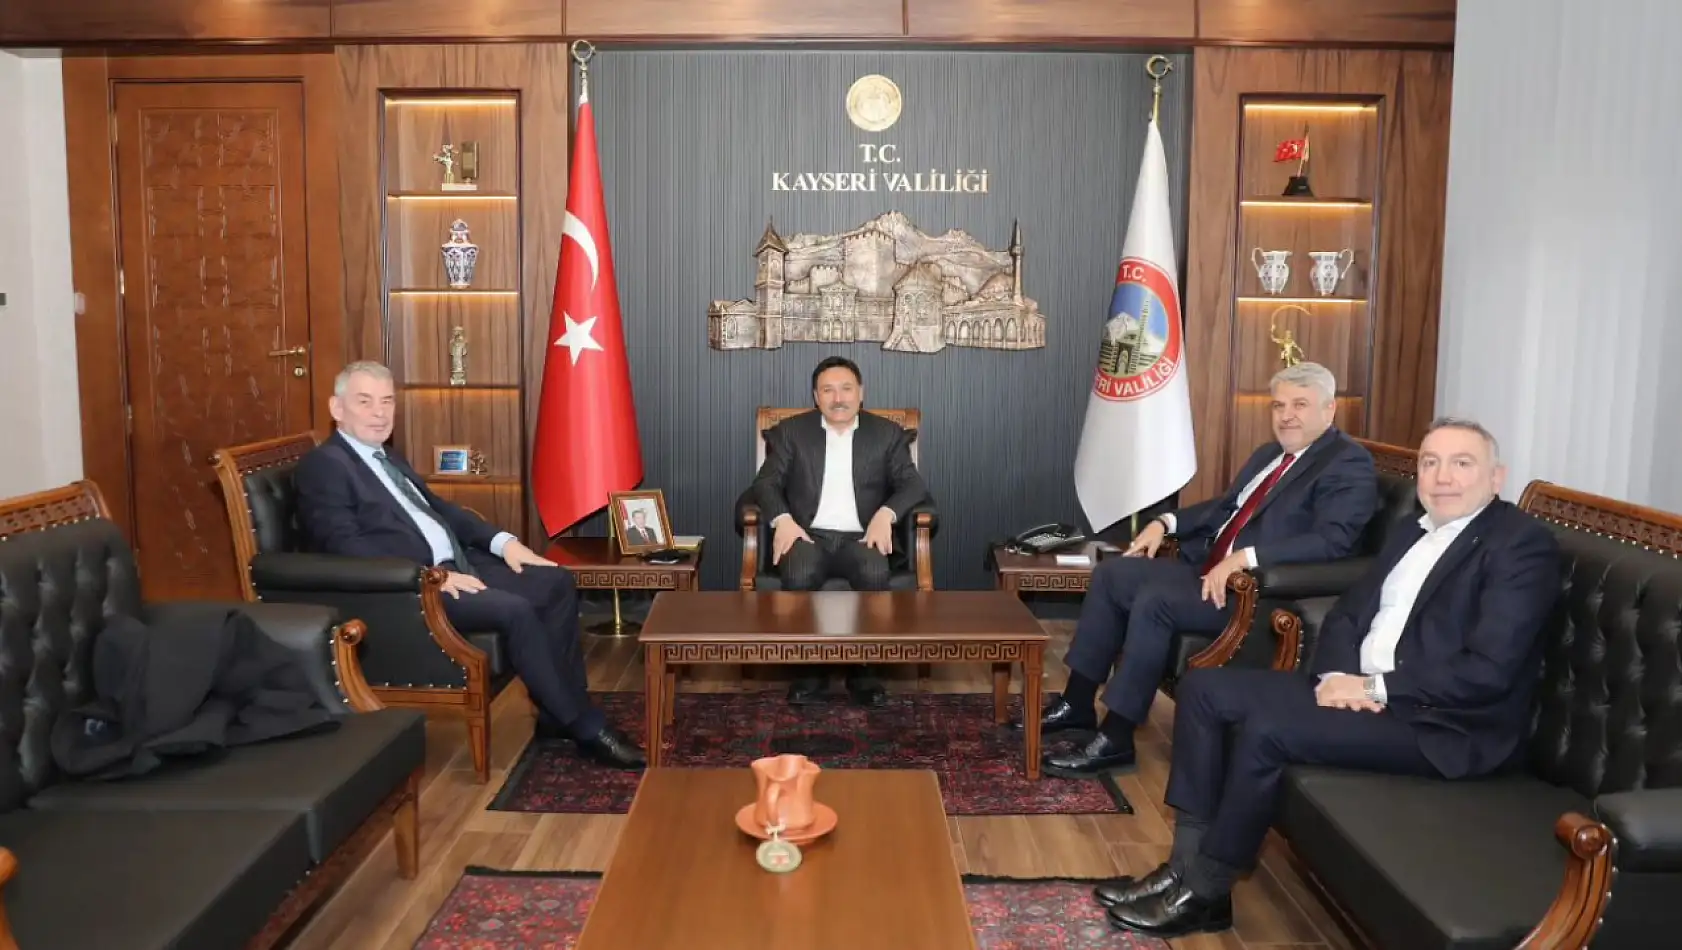 Erciyes Anadolu Holding'in patronu Kayseri'ye geldi